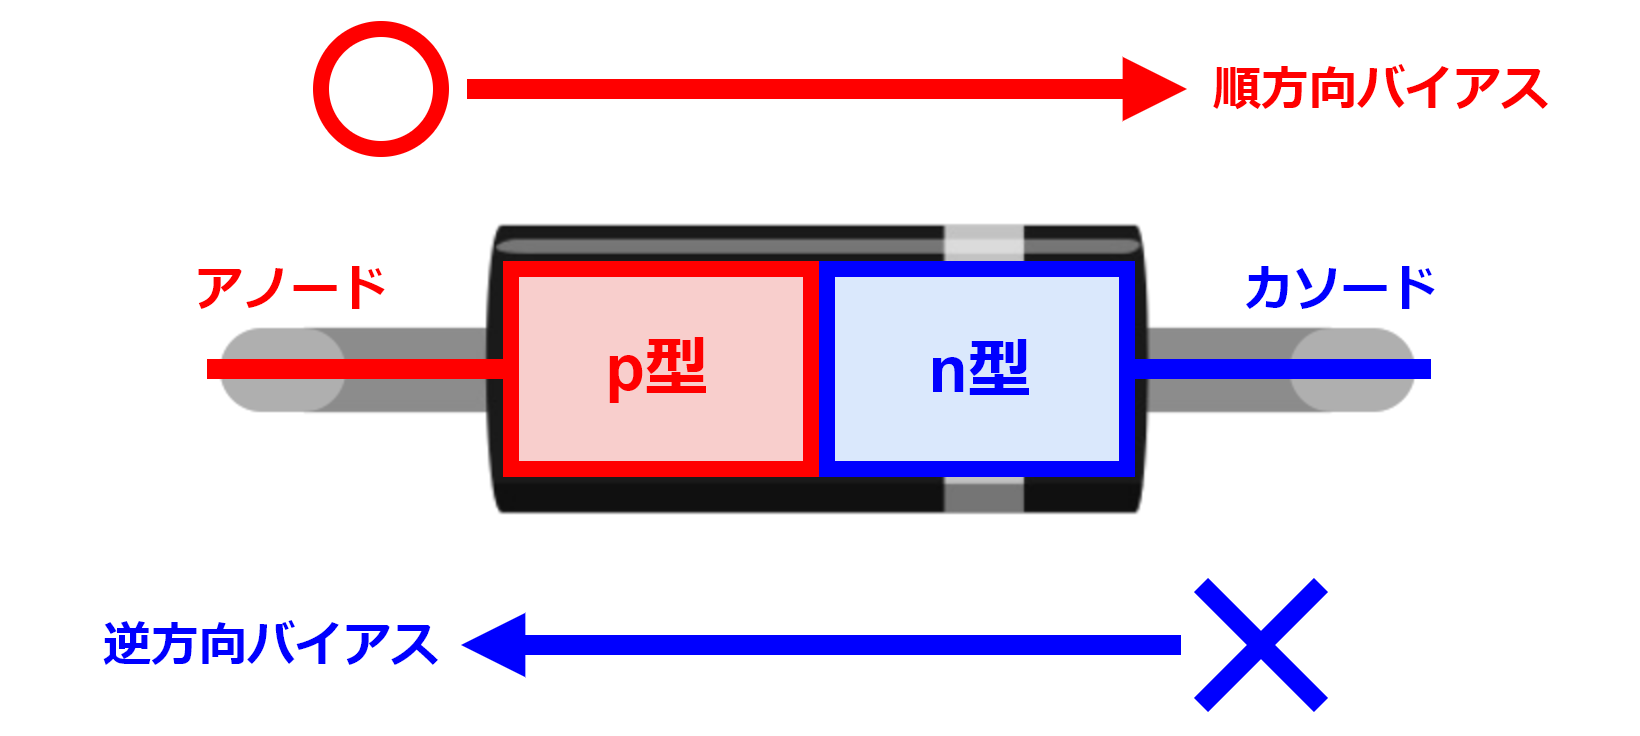 図2-3-2-1.pn接合型ダイオードの構造